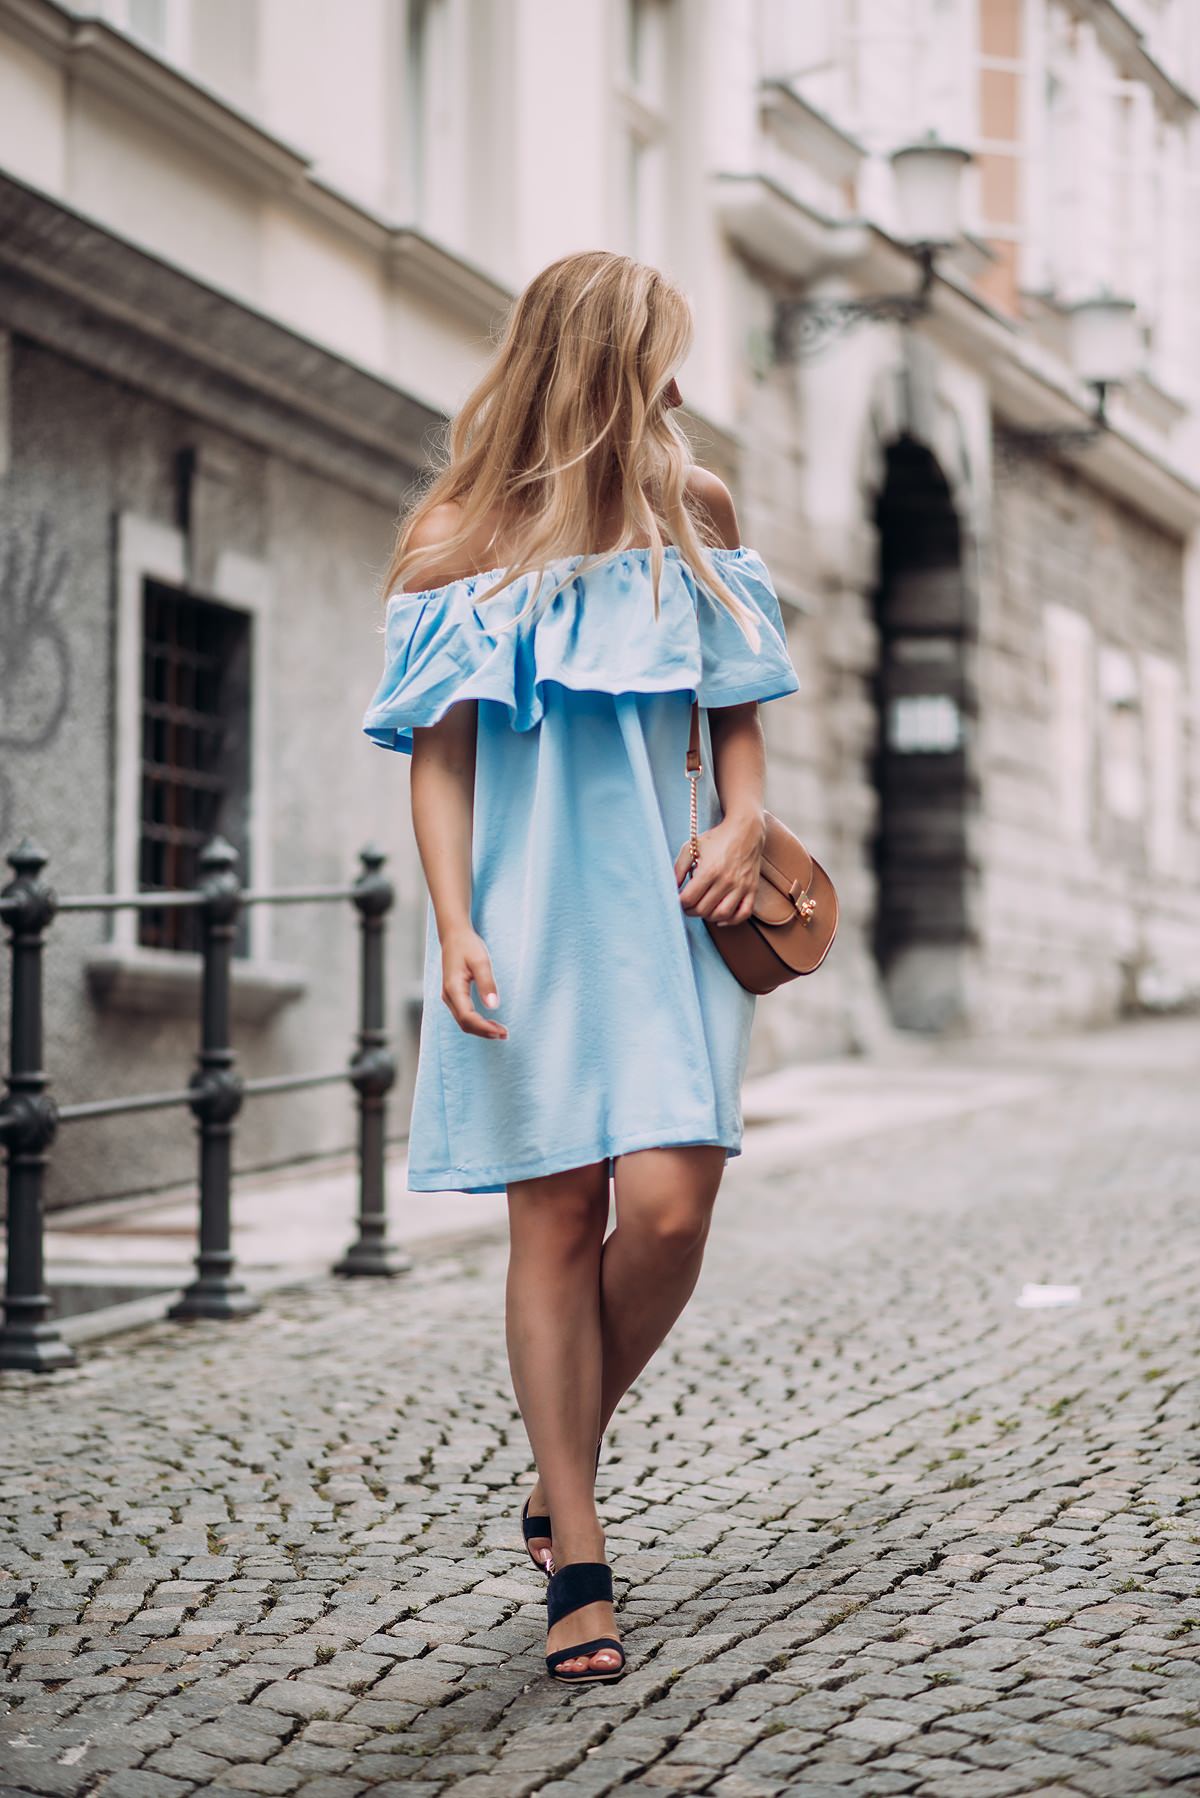 Off-the-shoulder dress fashion blogger